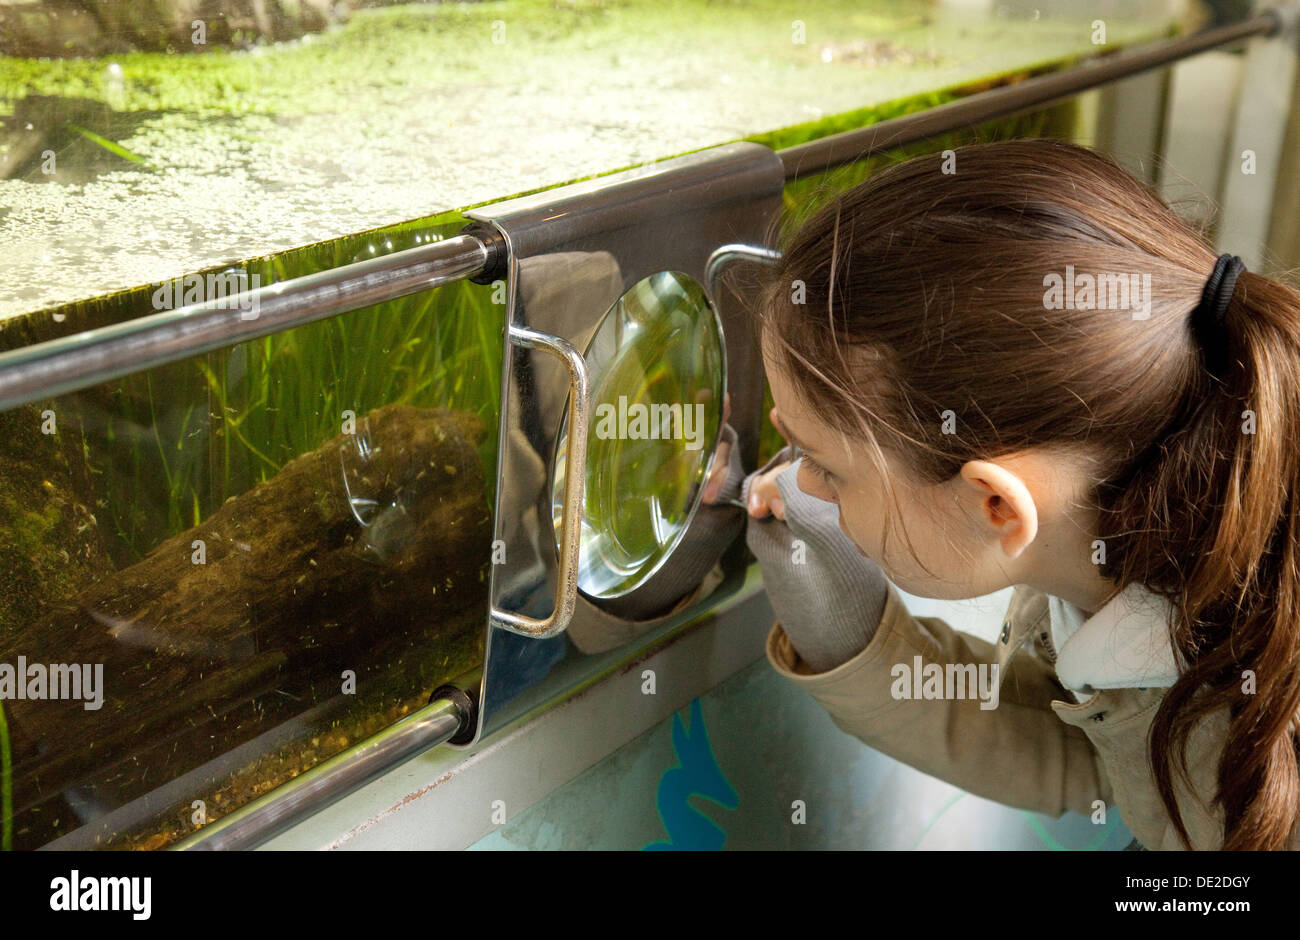 Wissenschaftliche Bildung Großbritannien; Ein Kind, das als Teil der Biologie das Leben im Teich studiert, London Zoo, Großbritannien Stockfoto